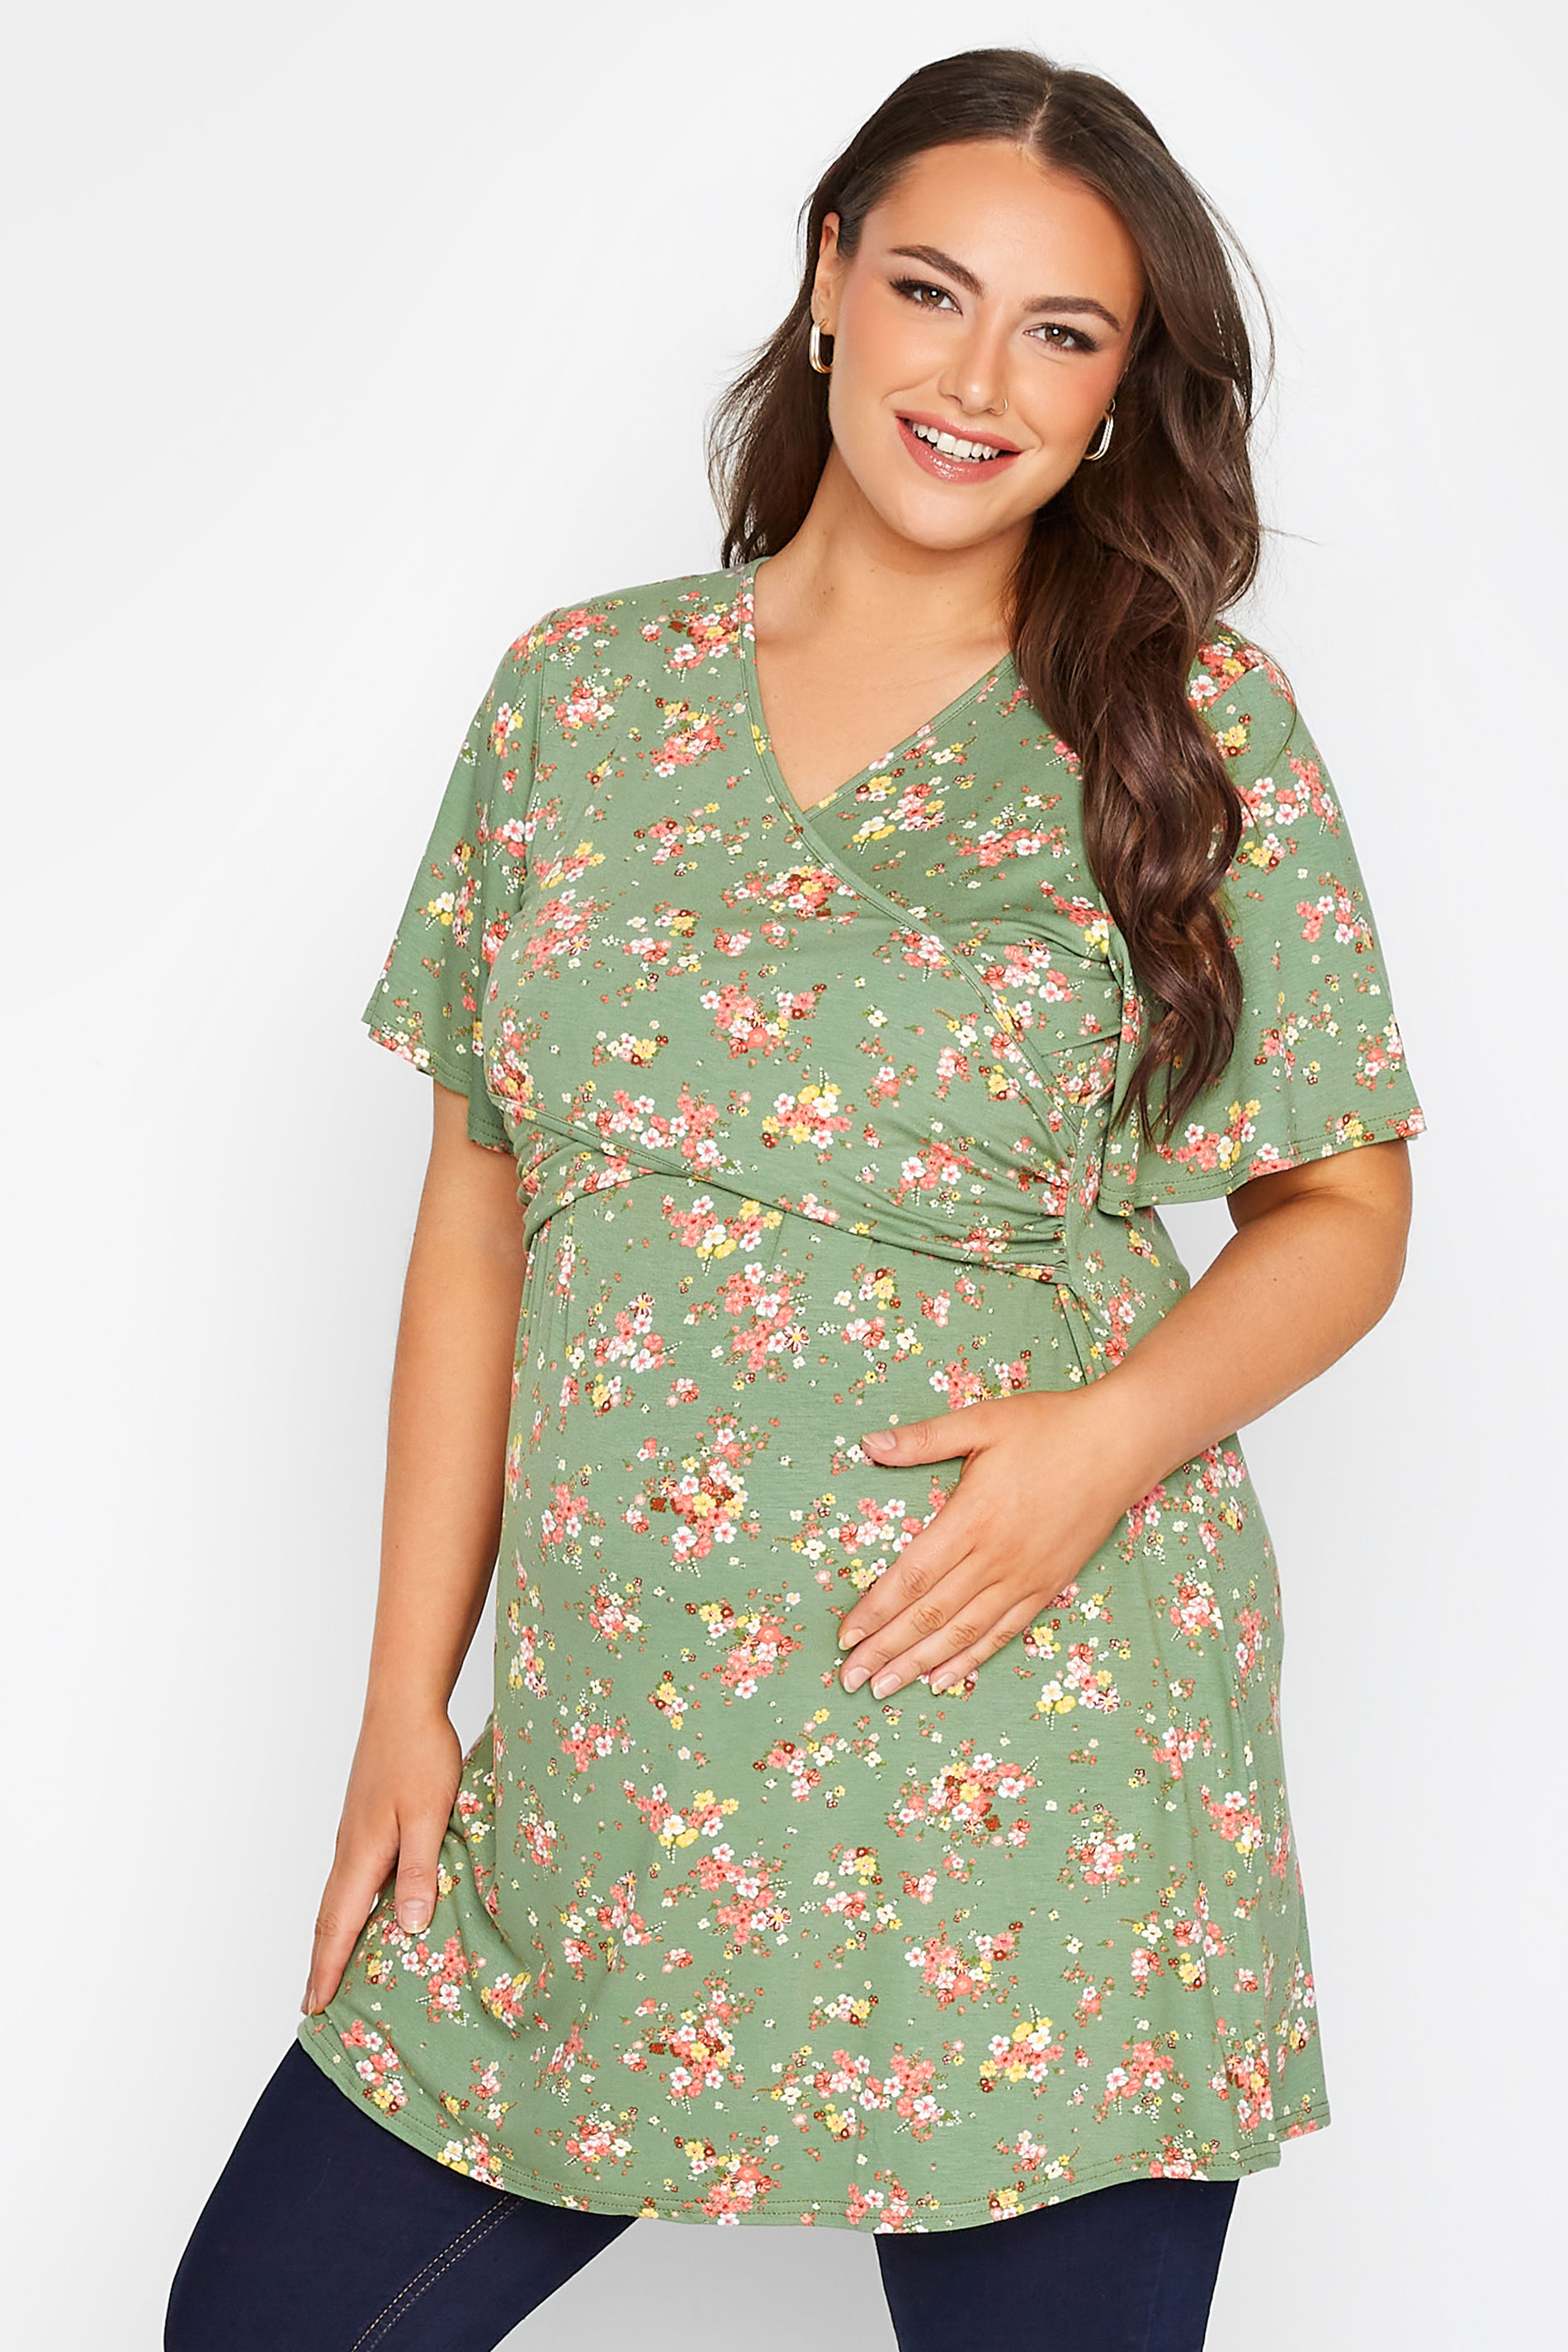 Grande taille  Vêtements de Grossesse Grande taille  Tops et t-shirts de grossesse | BUMP IT UP MATERNITY Curve Green Floral Nursing Top - LU42501